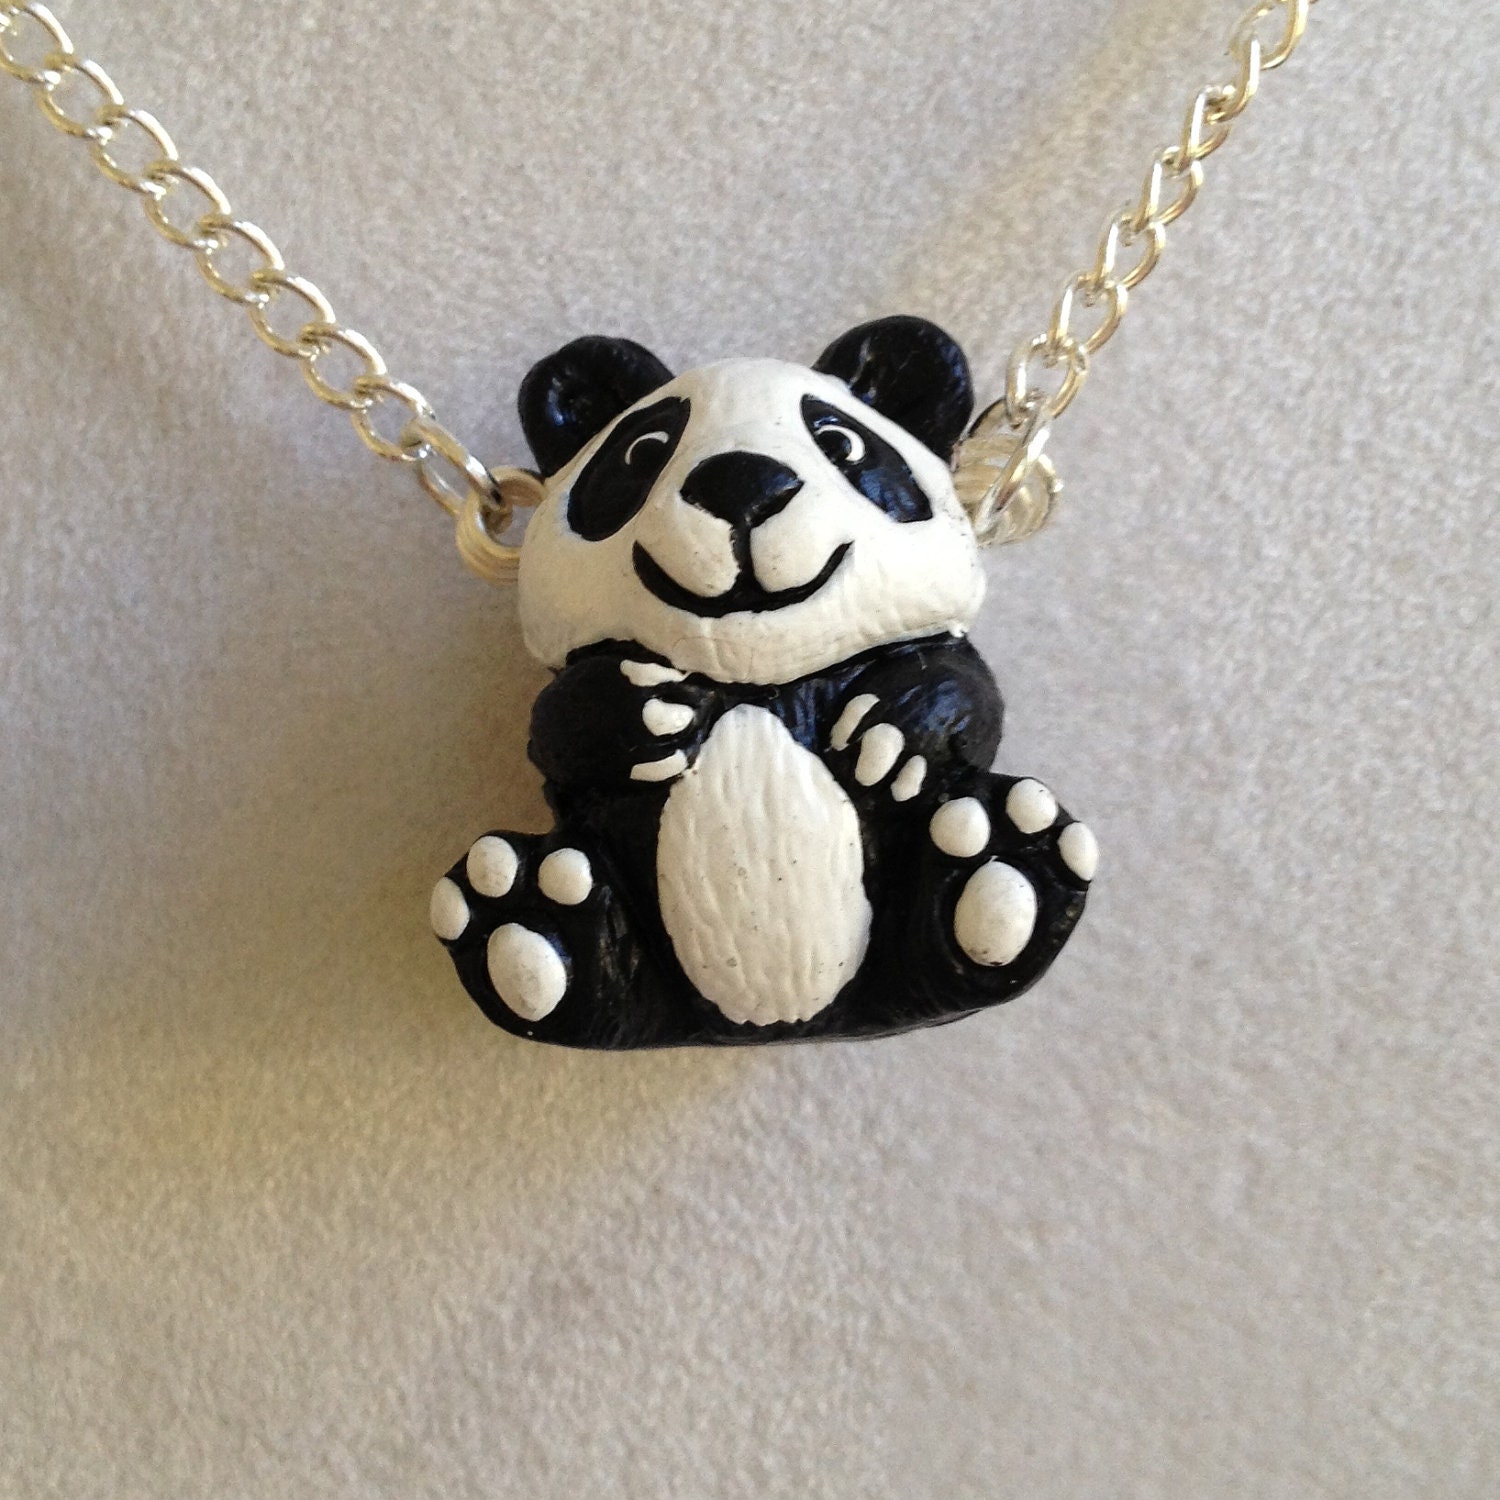 Panda Bear Necklace By Joytoyou41 On Etsy 7255